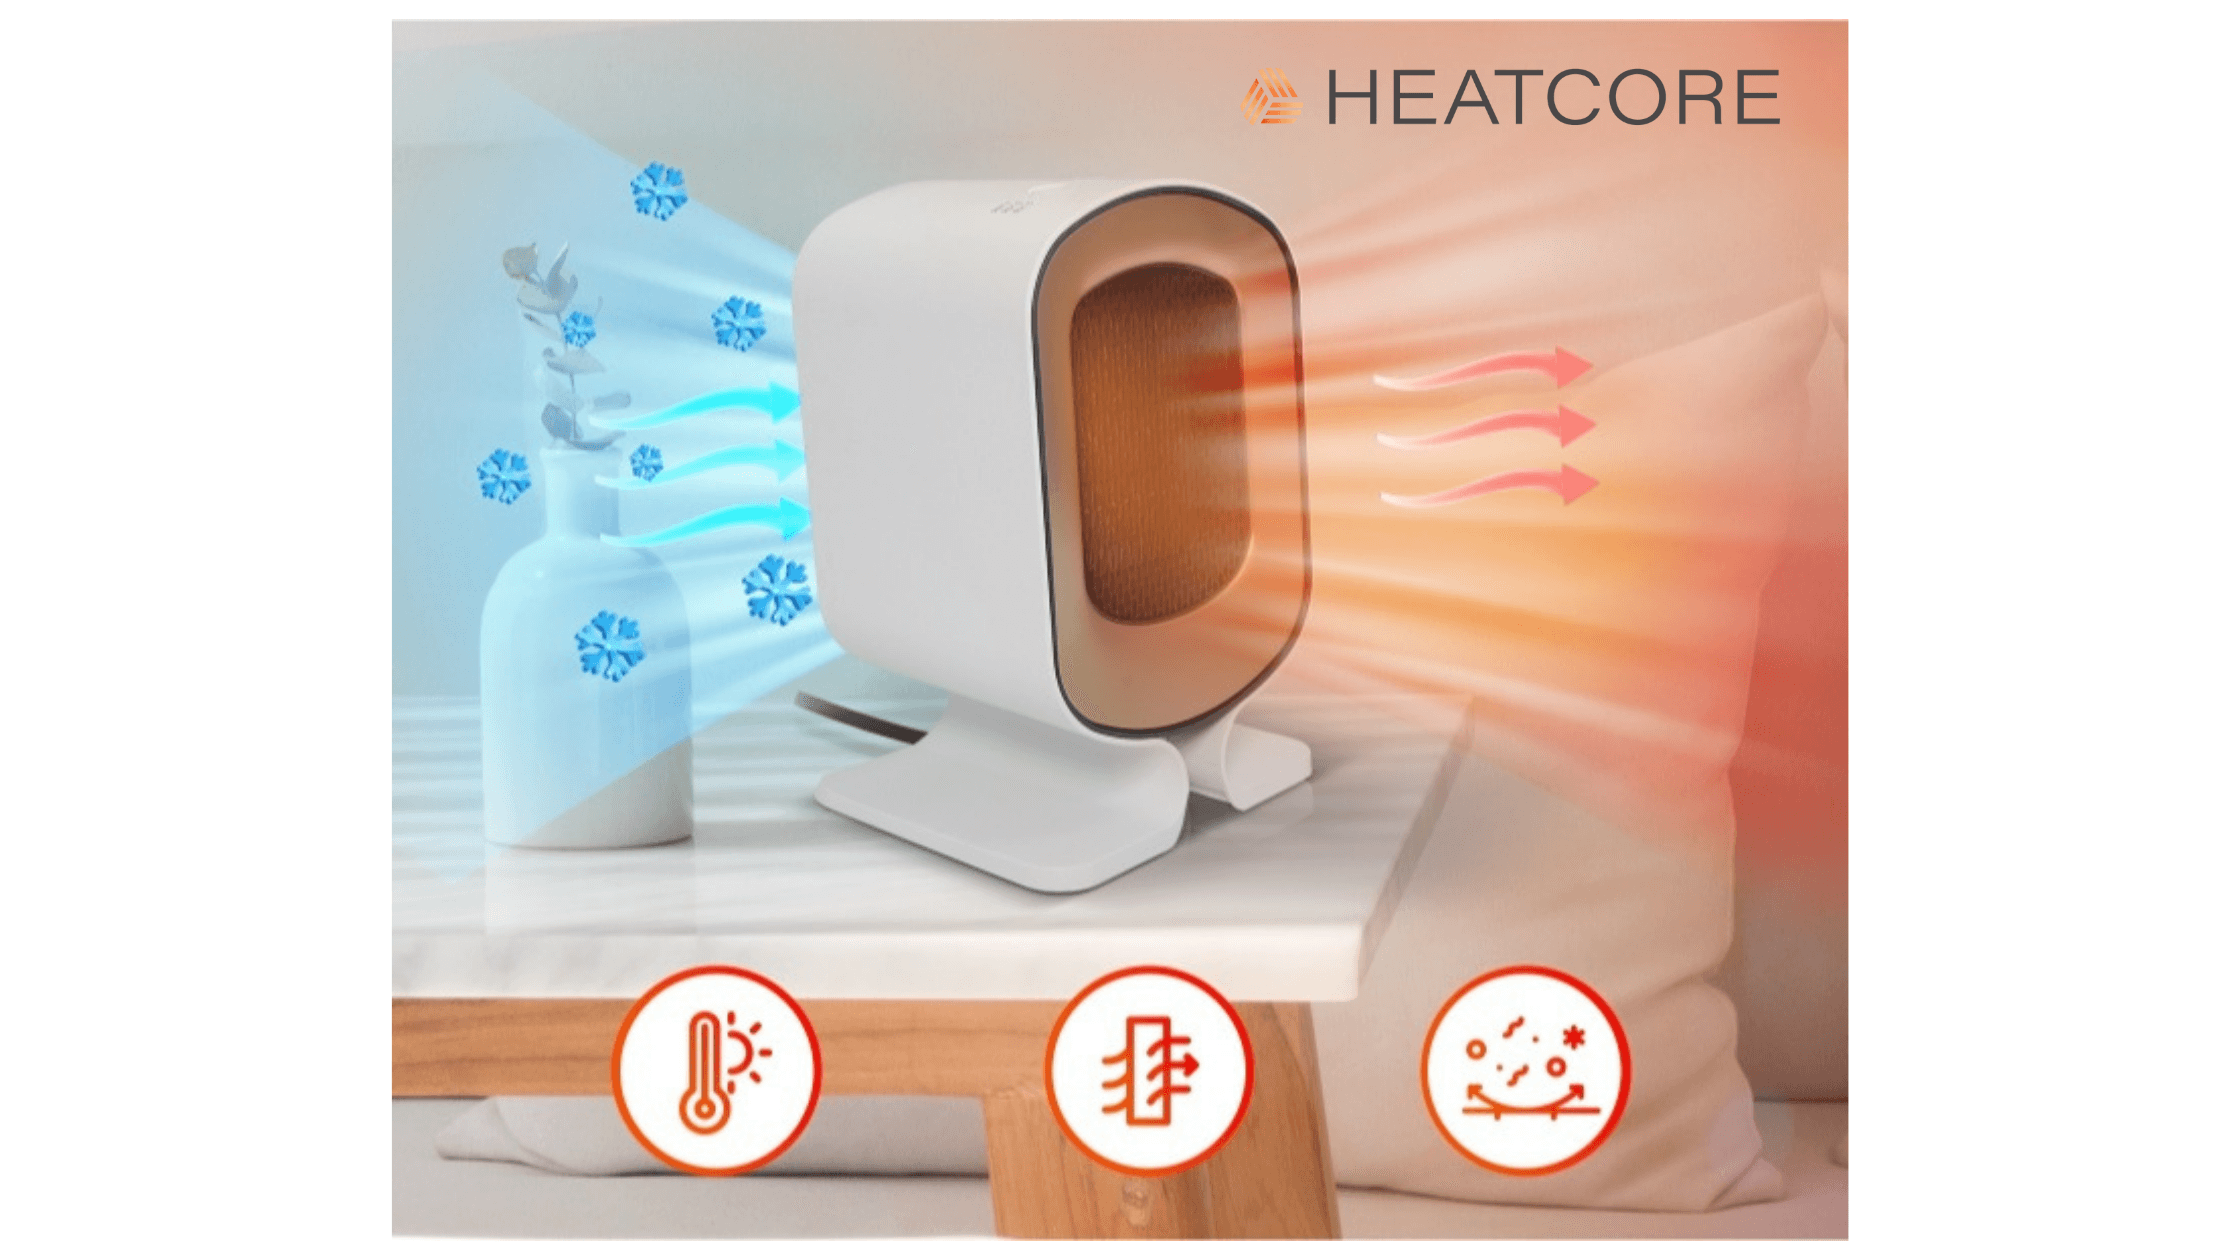 Heatcore Heater features